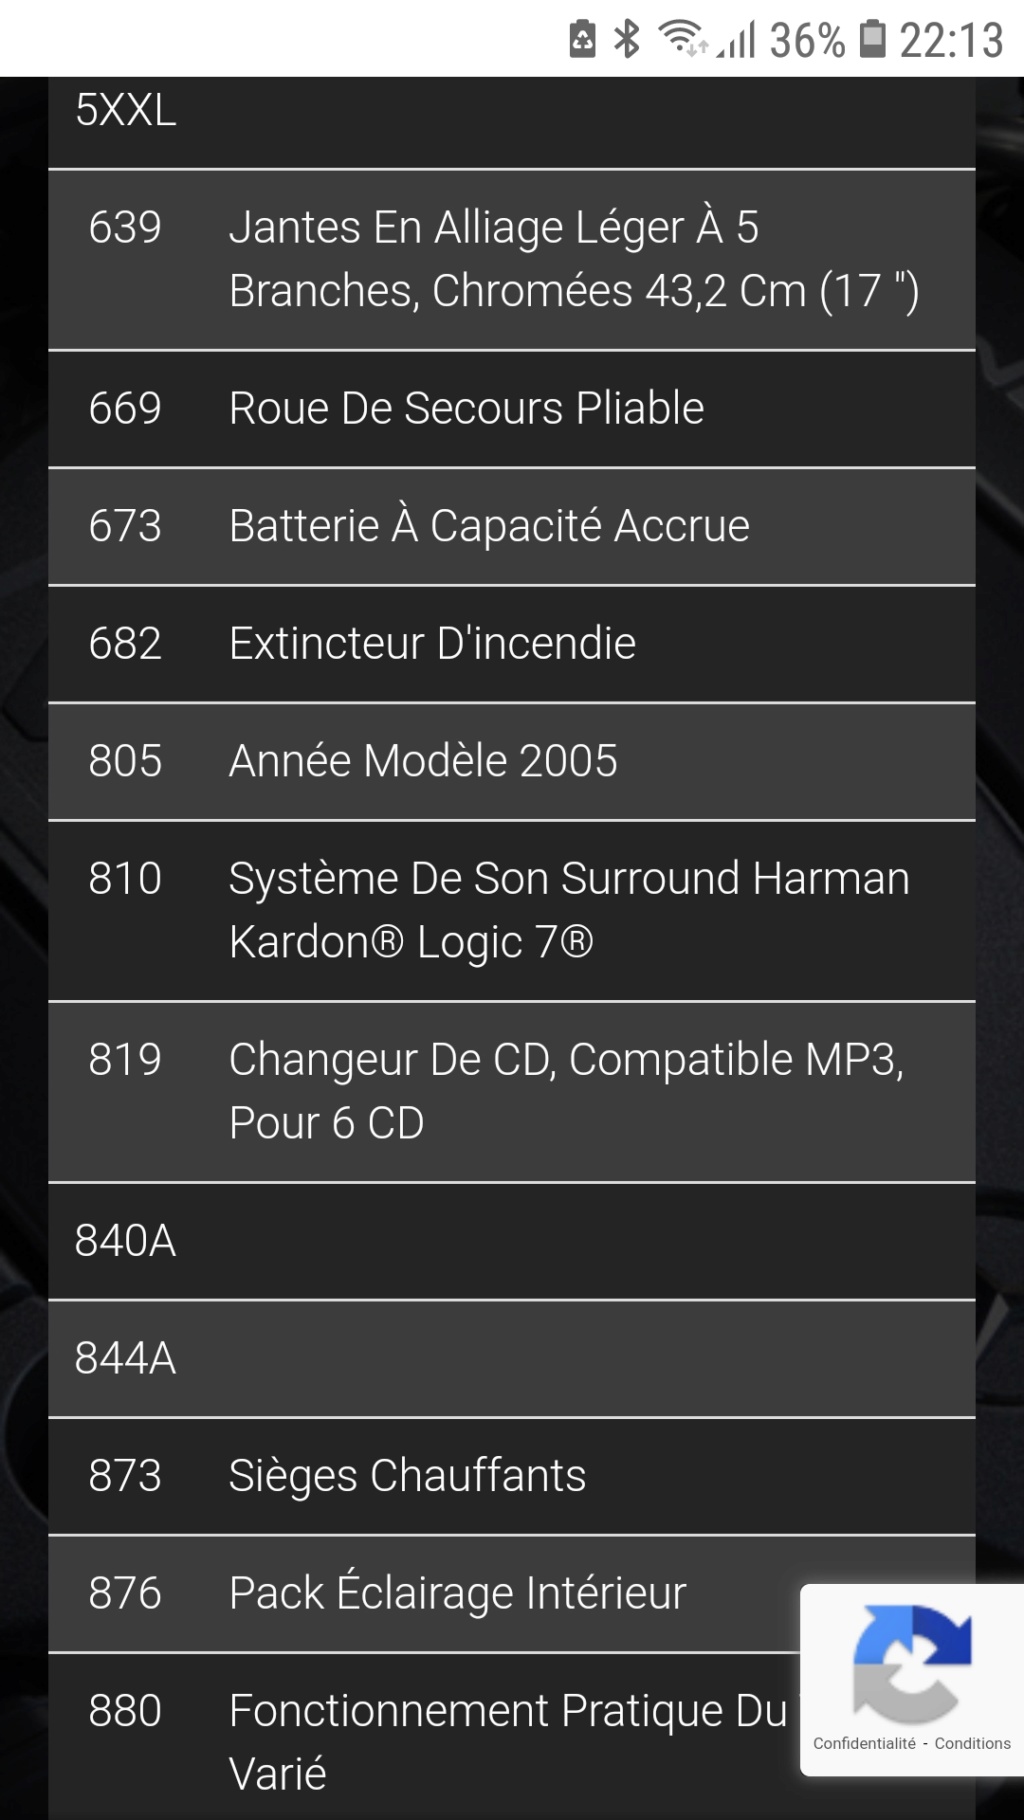 antenne - PRÉSENTATION DE DOM59 Screen16